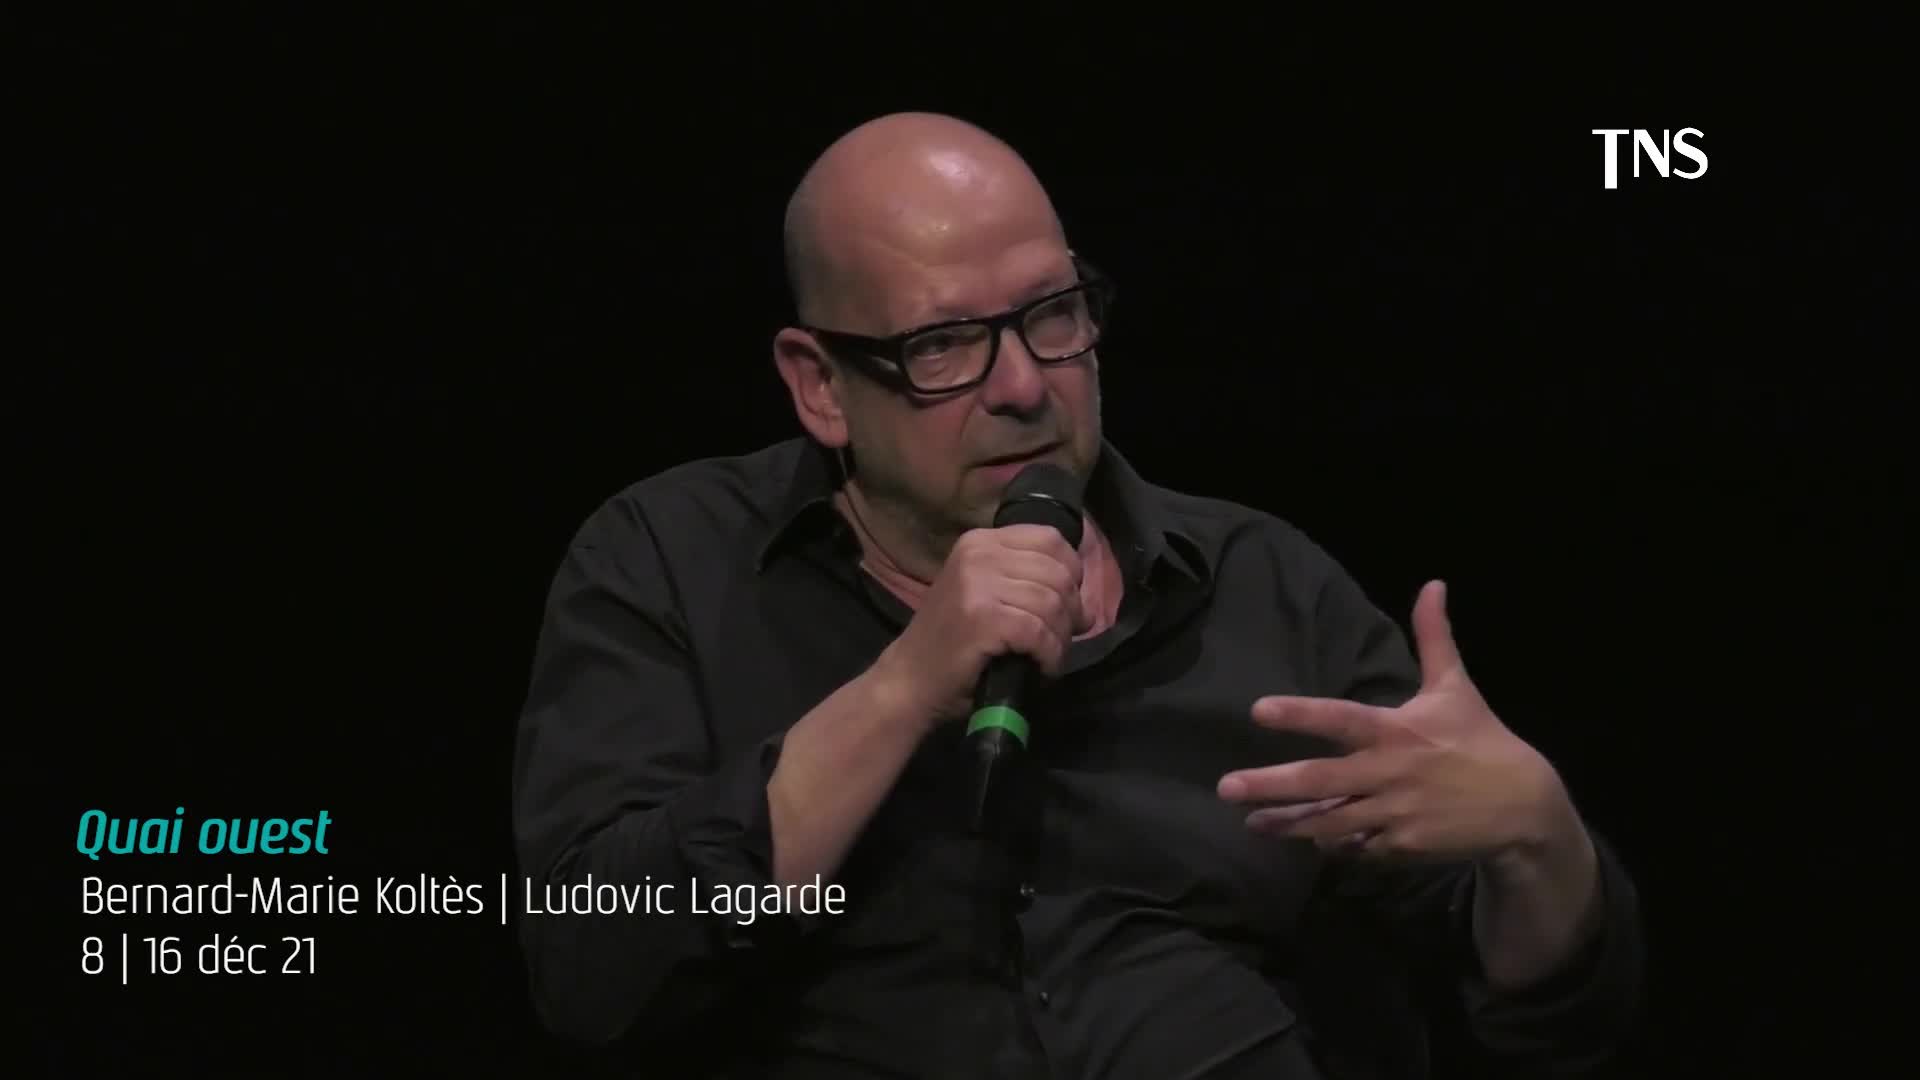 Vidéo "Quai ouest" - Bernard-Marie Koltès/Ludovic Lagarde - Présentation (TNS)